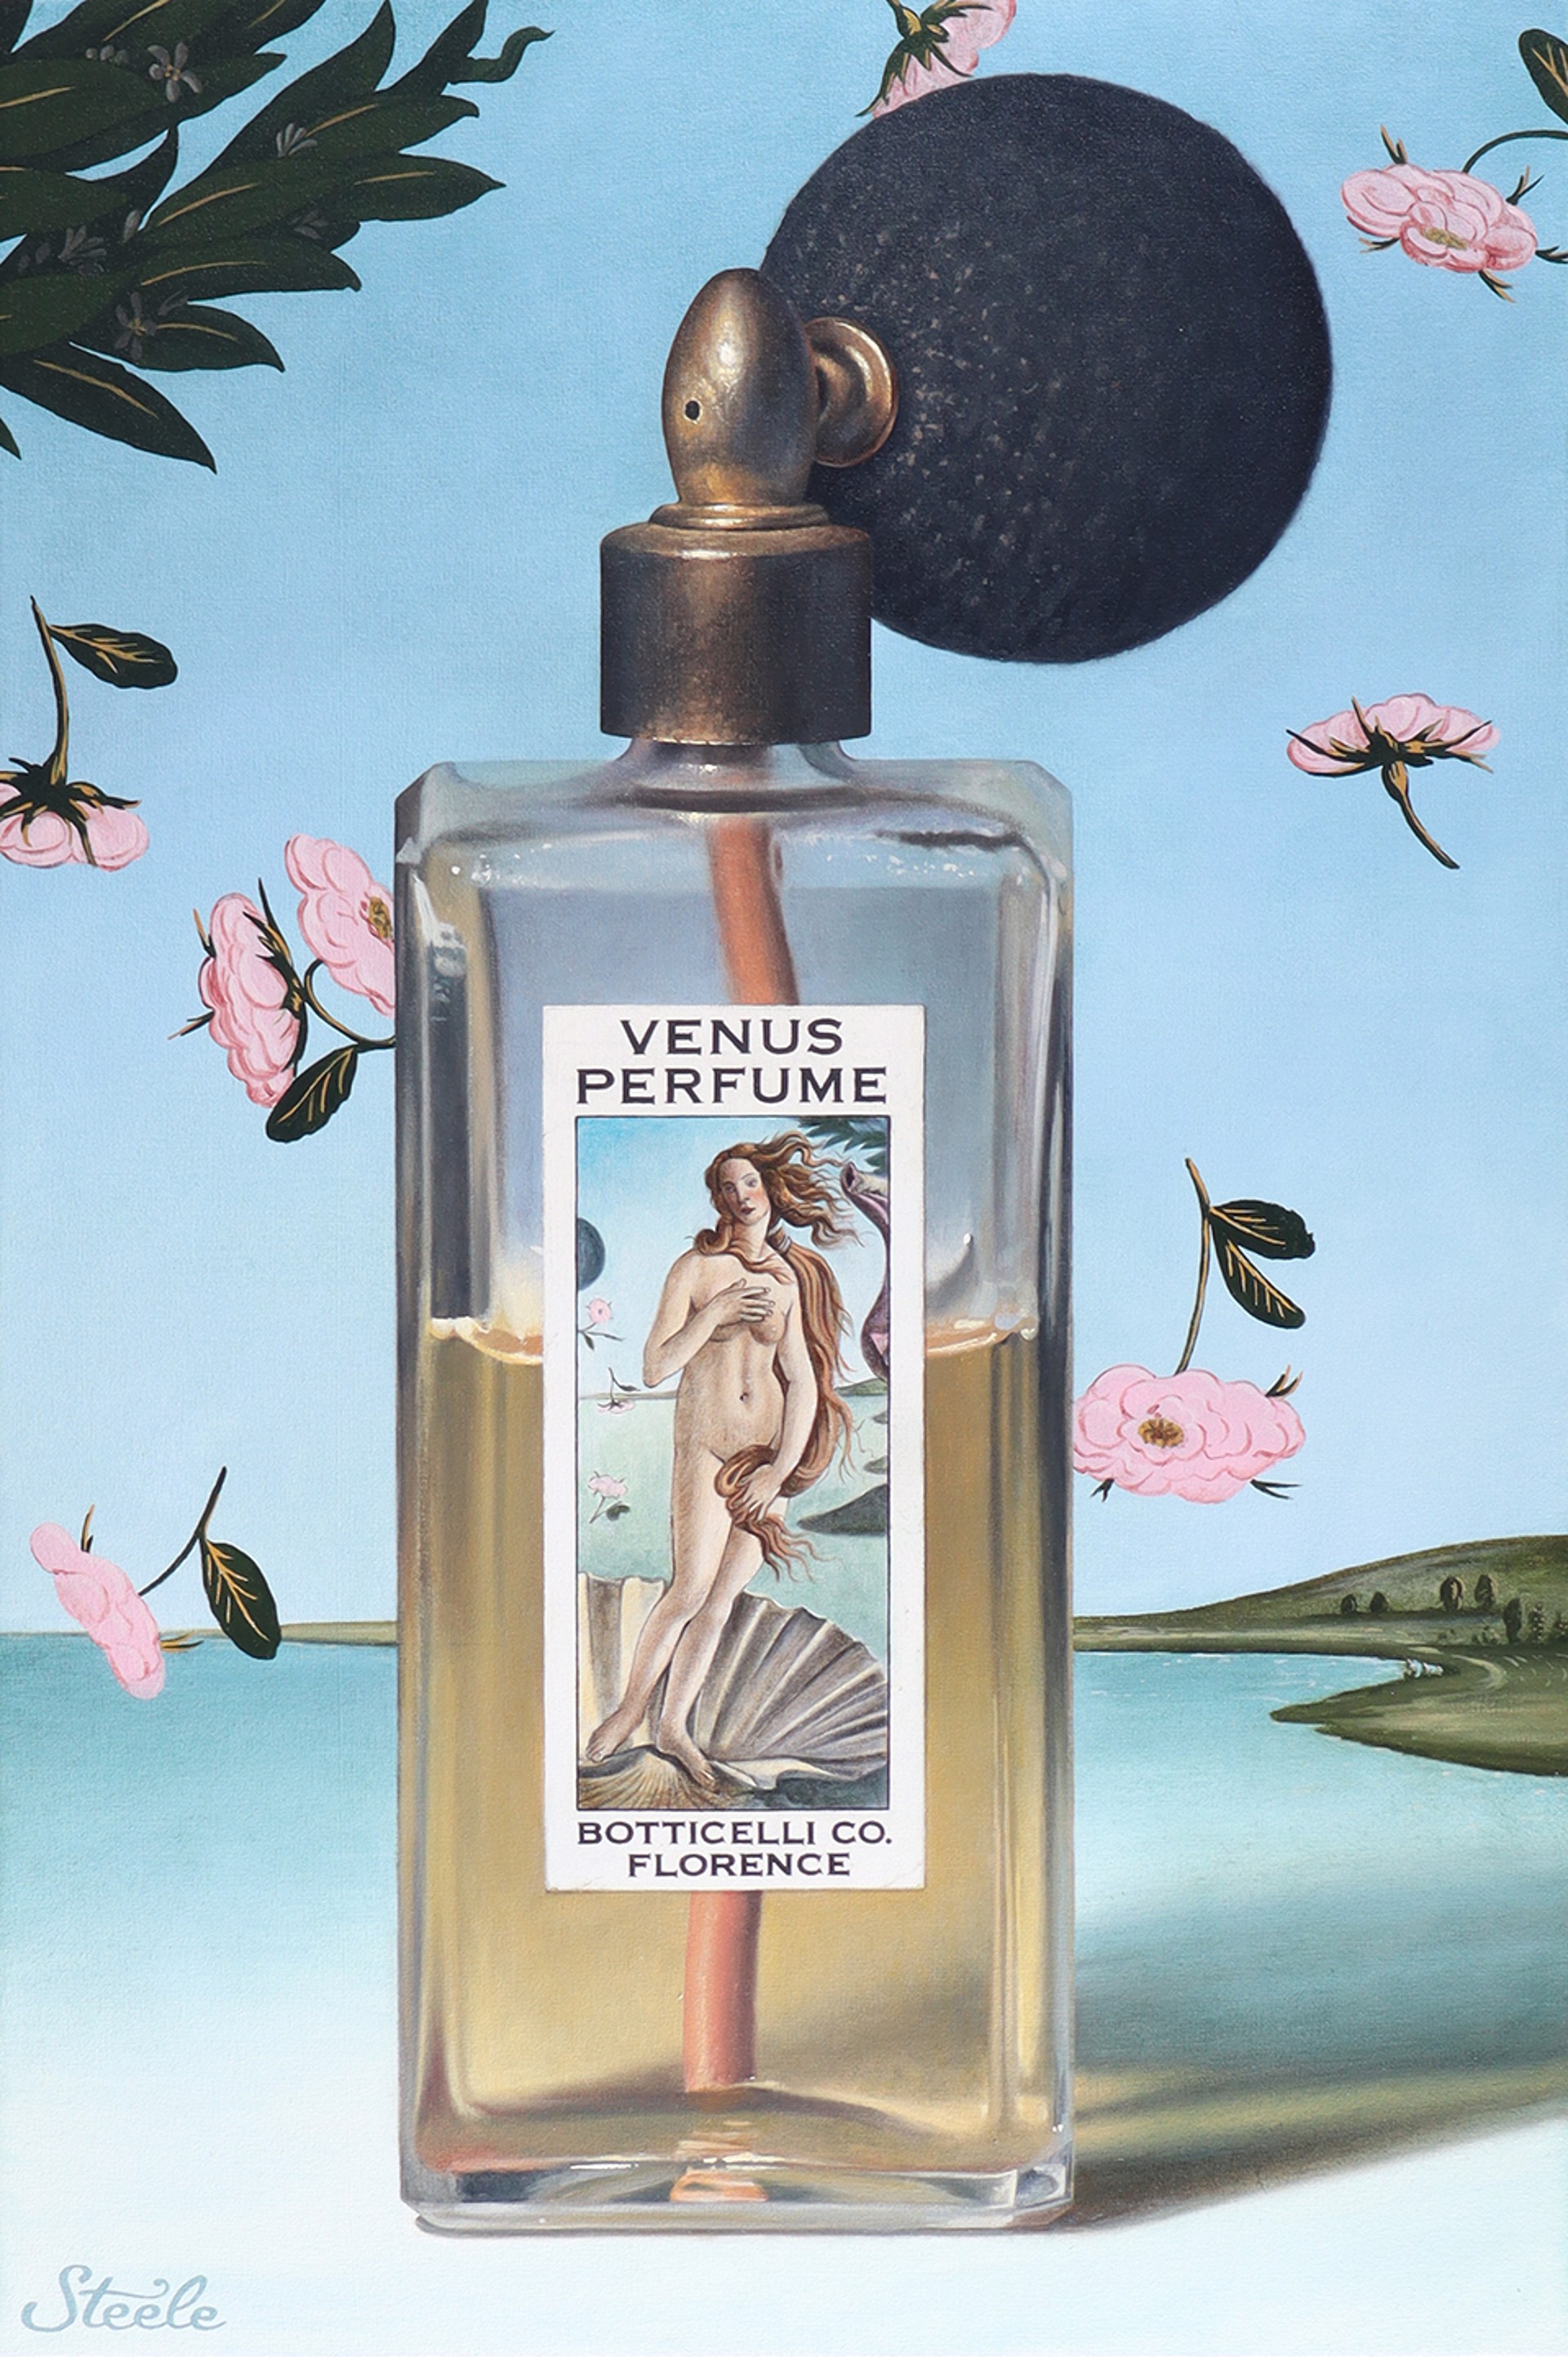 Venus Perfume by Ben Steele